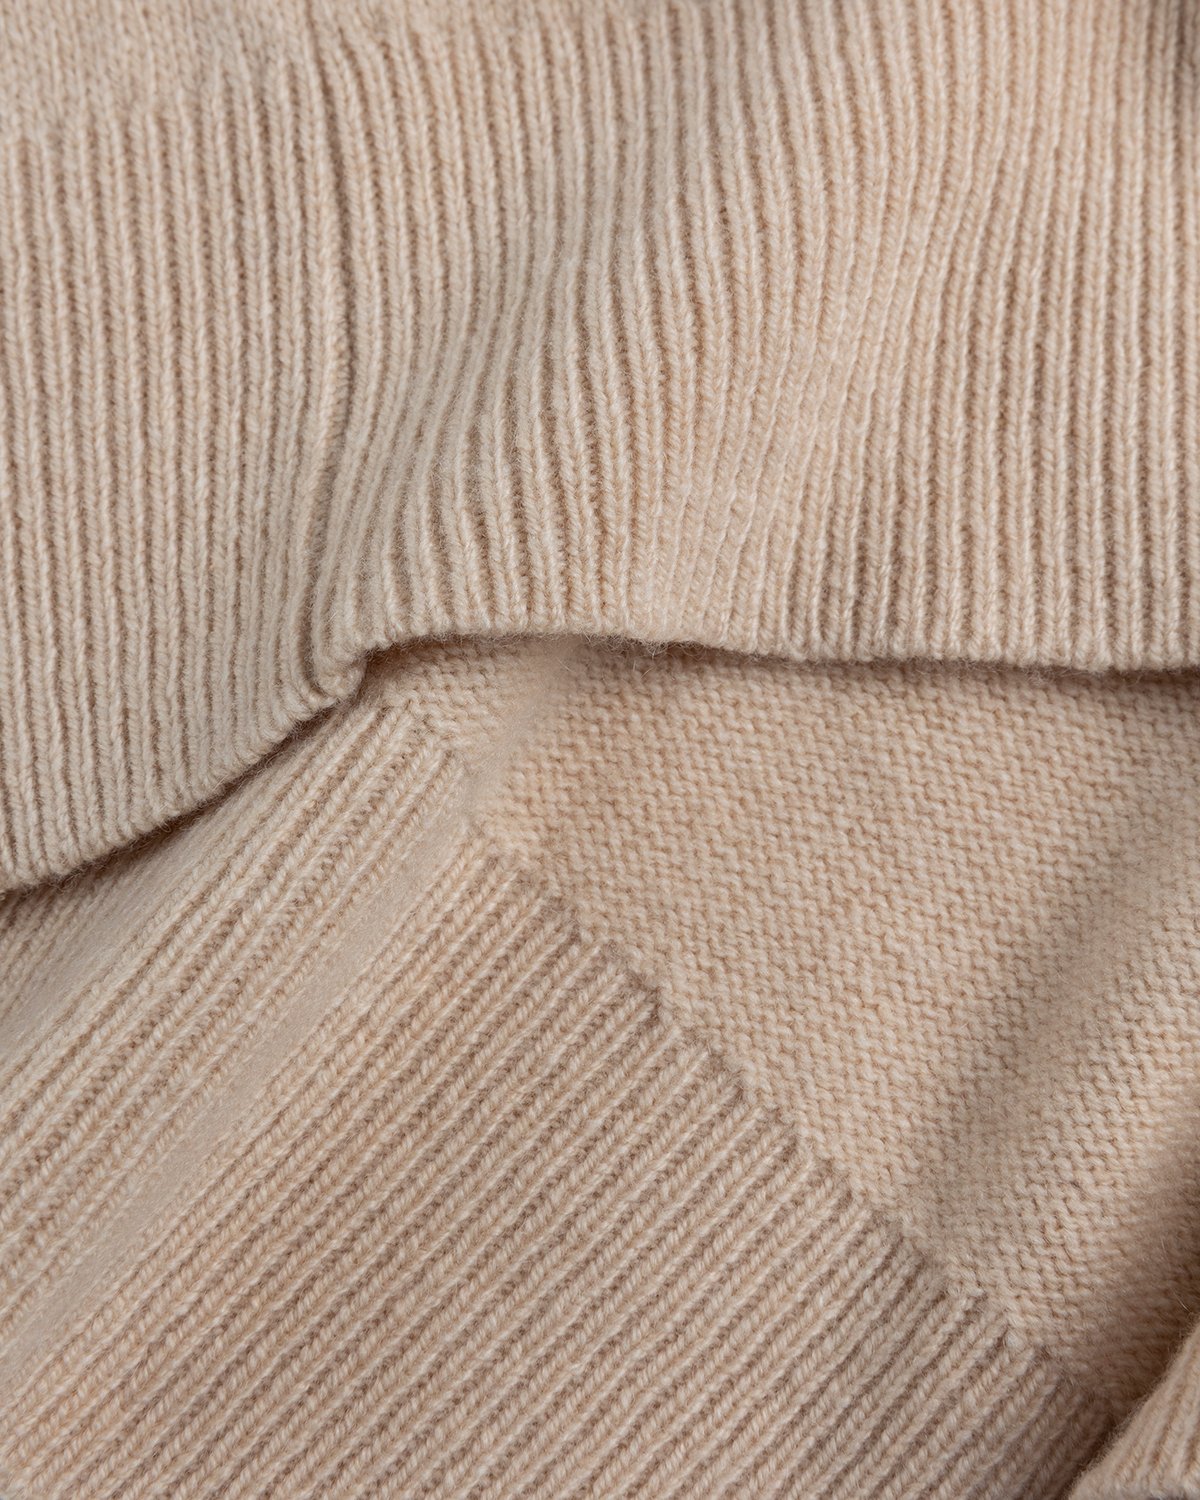 Acne Studios - Cashmere Blend V-Neck Sweater Biscuit Beige - Clothing - Beige - Image 5